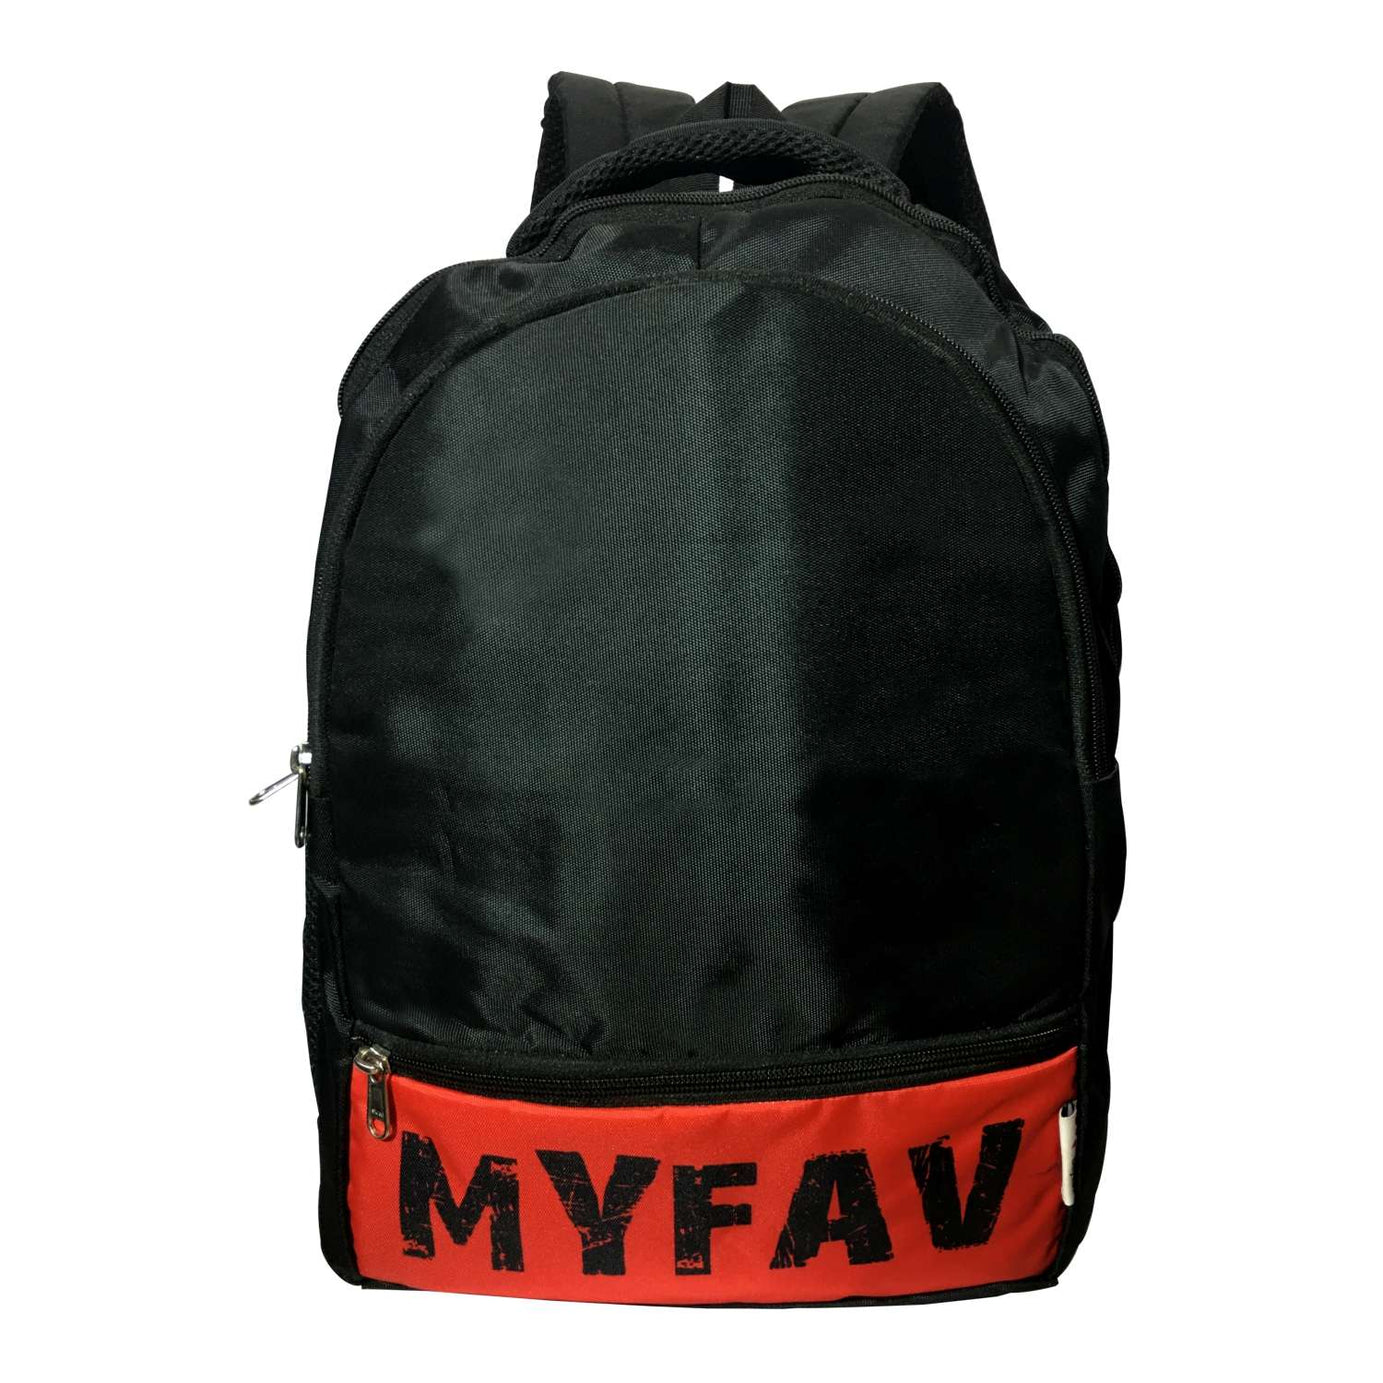 My Fav Office Bag / Laptop Backpack for Men Women